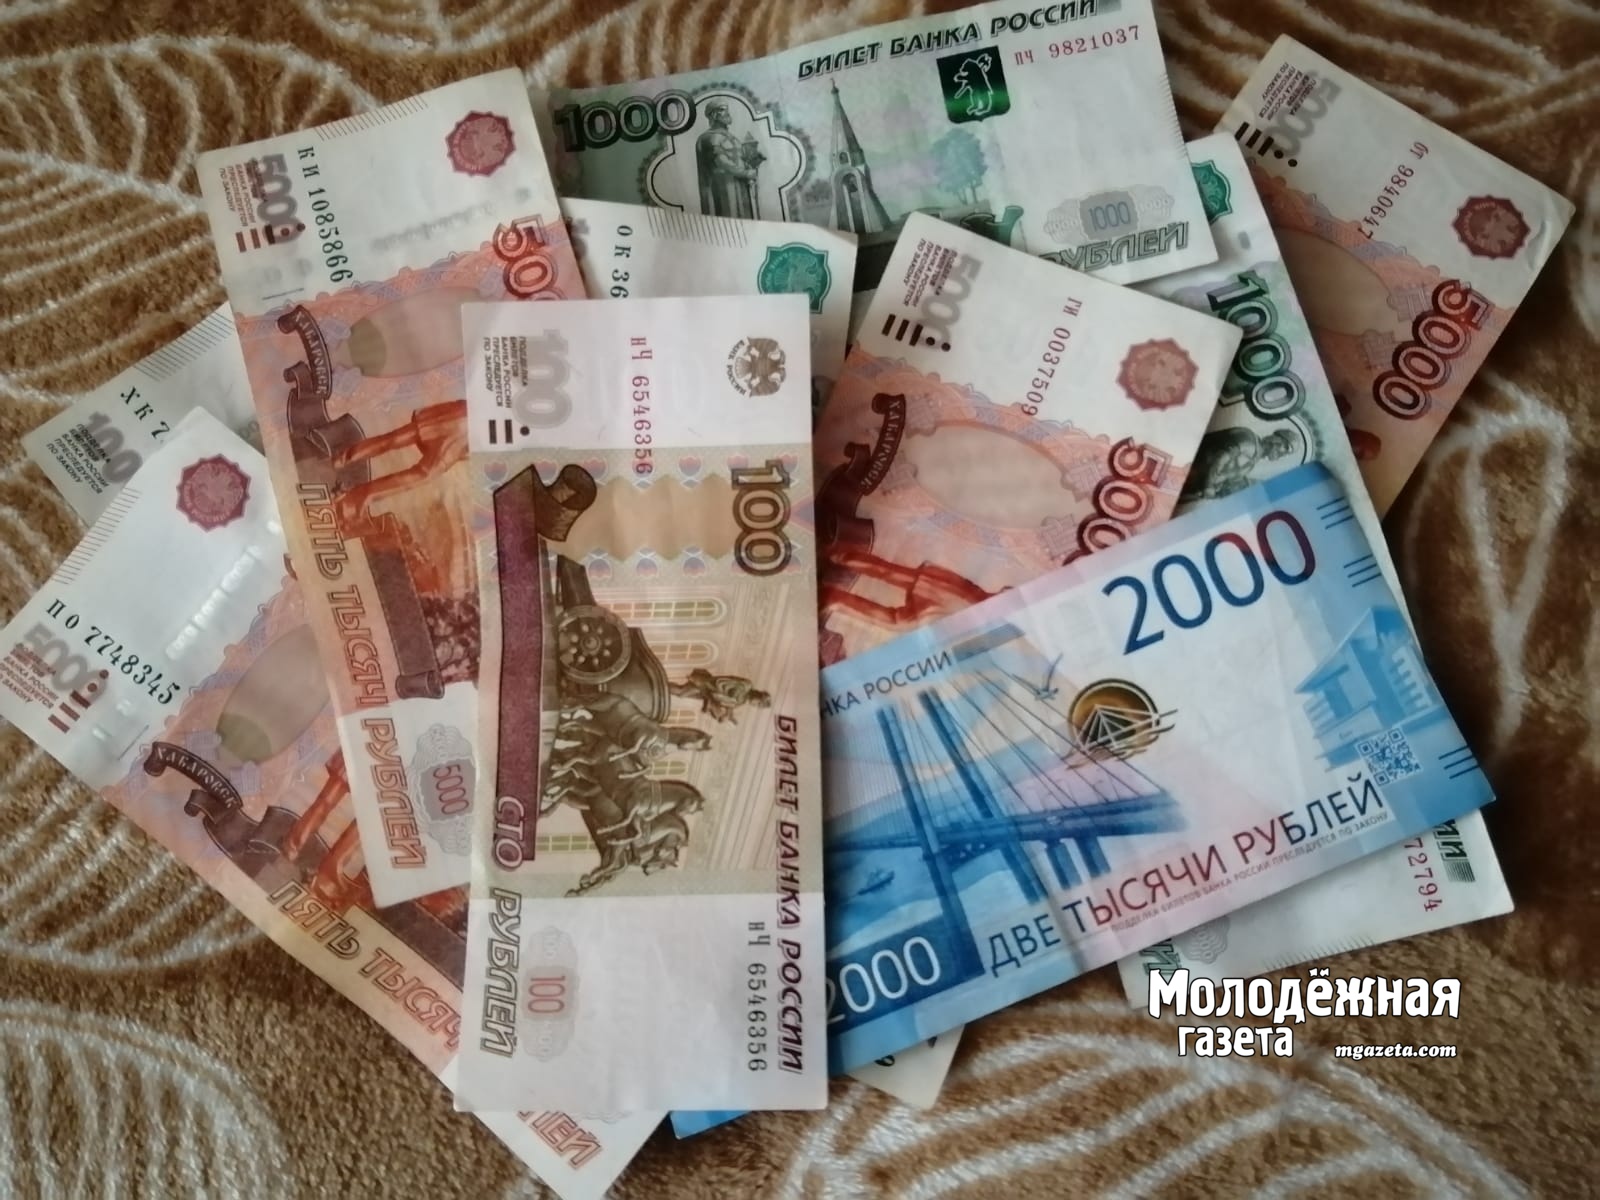 Пожилая женщина лишилась 530 тысяч рублей после установки приложения на телефон